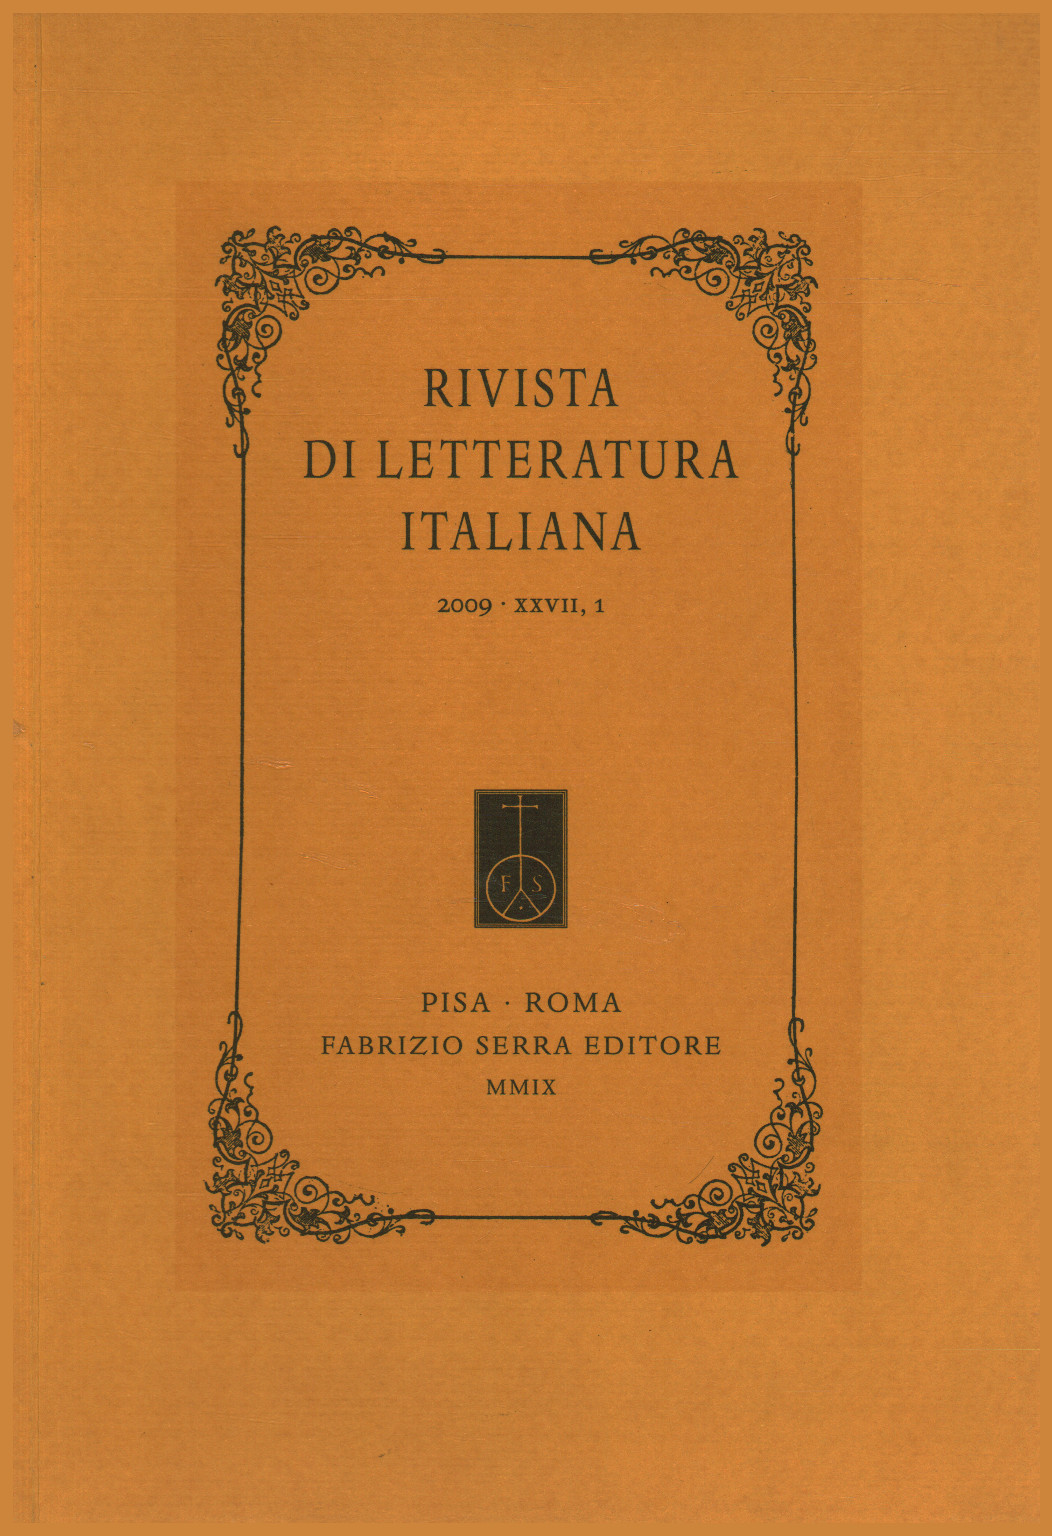 Zeitschrift für italienische literatur 2009,XXVII,1, s.zu.